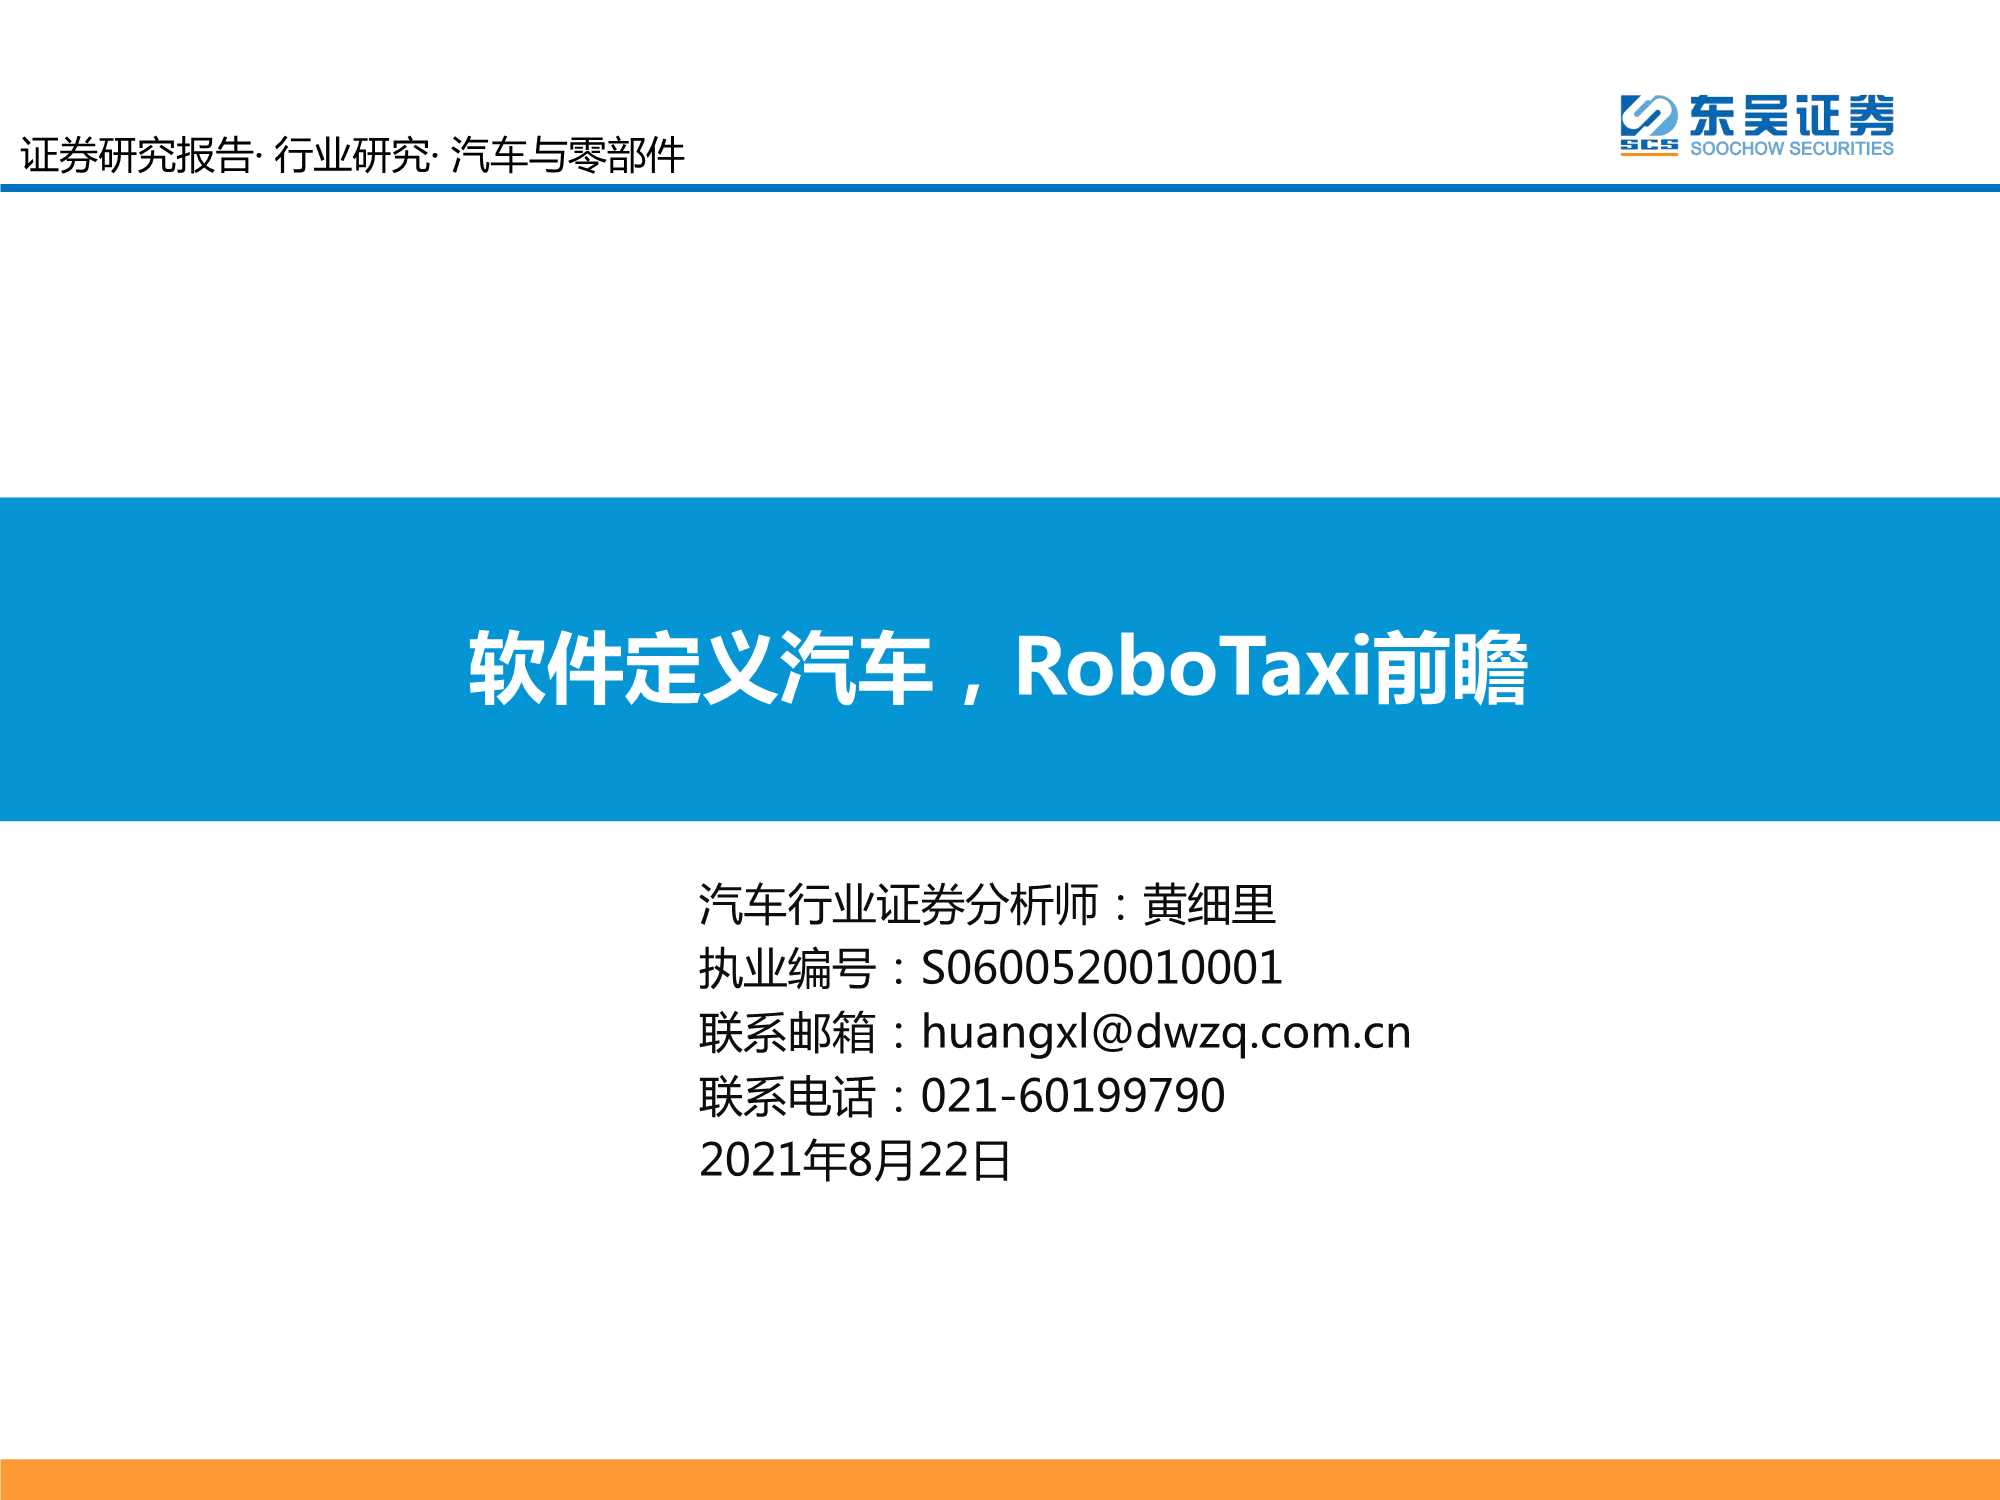 东吴证券-汽车与零部件行业：软件定义汽车，RoboTaxi前瞻-20210822-41页